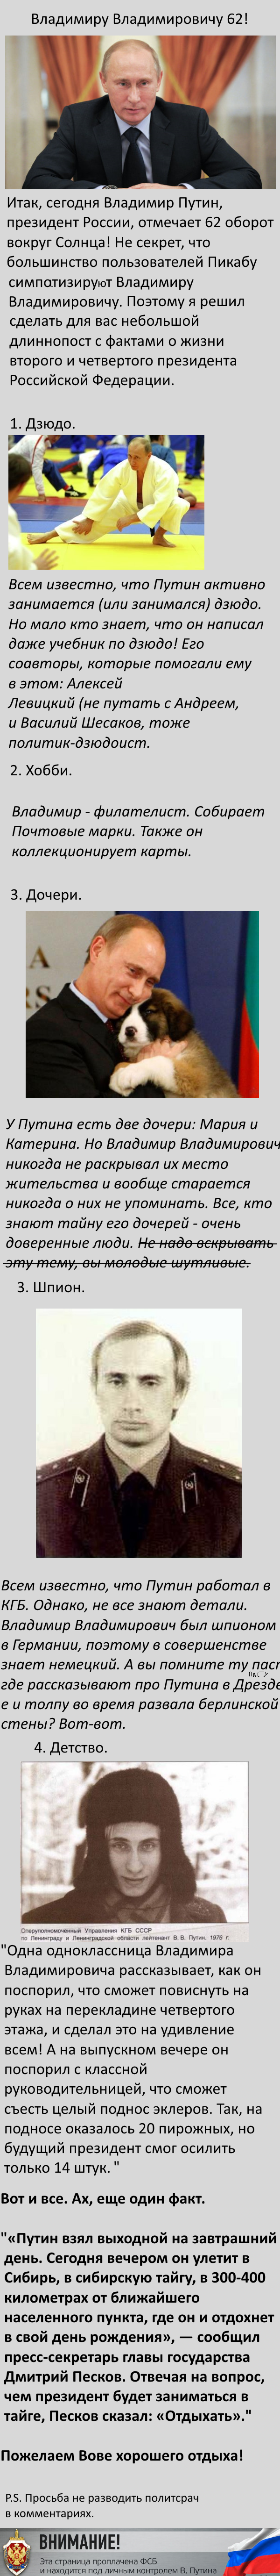 Сегодня день рождения Владимира Владимировича Путина